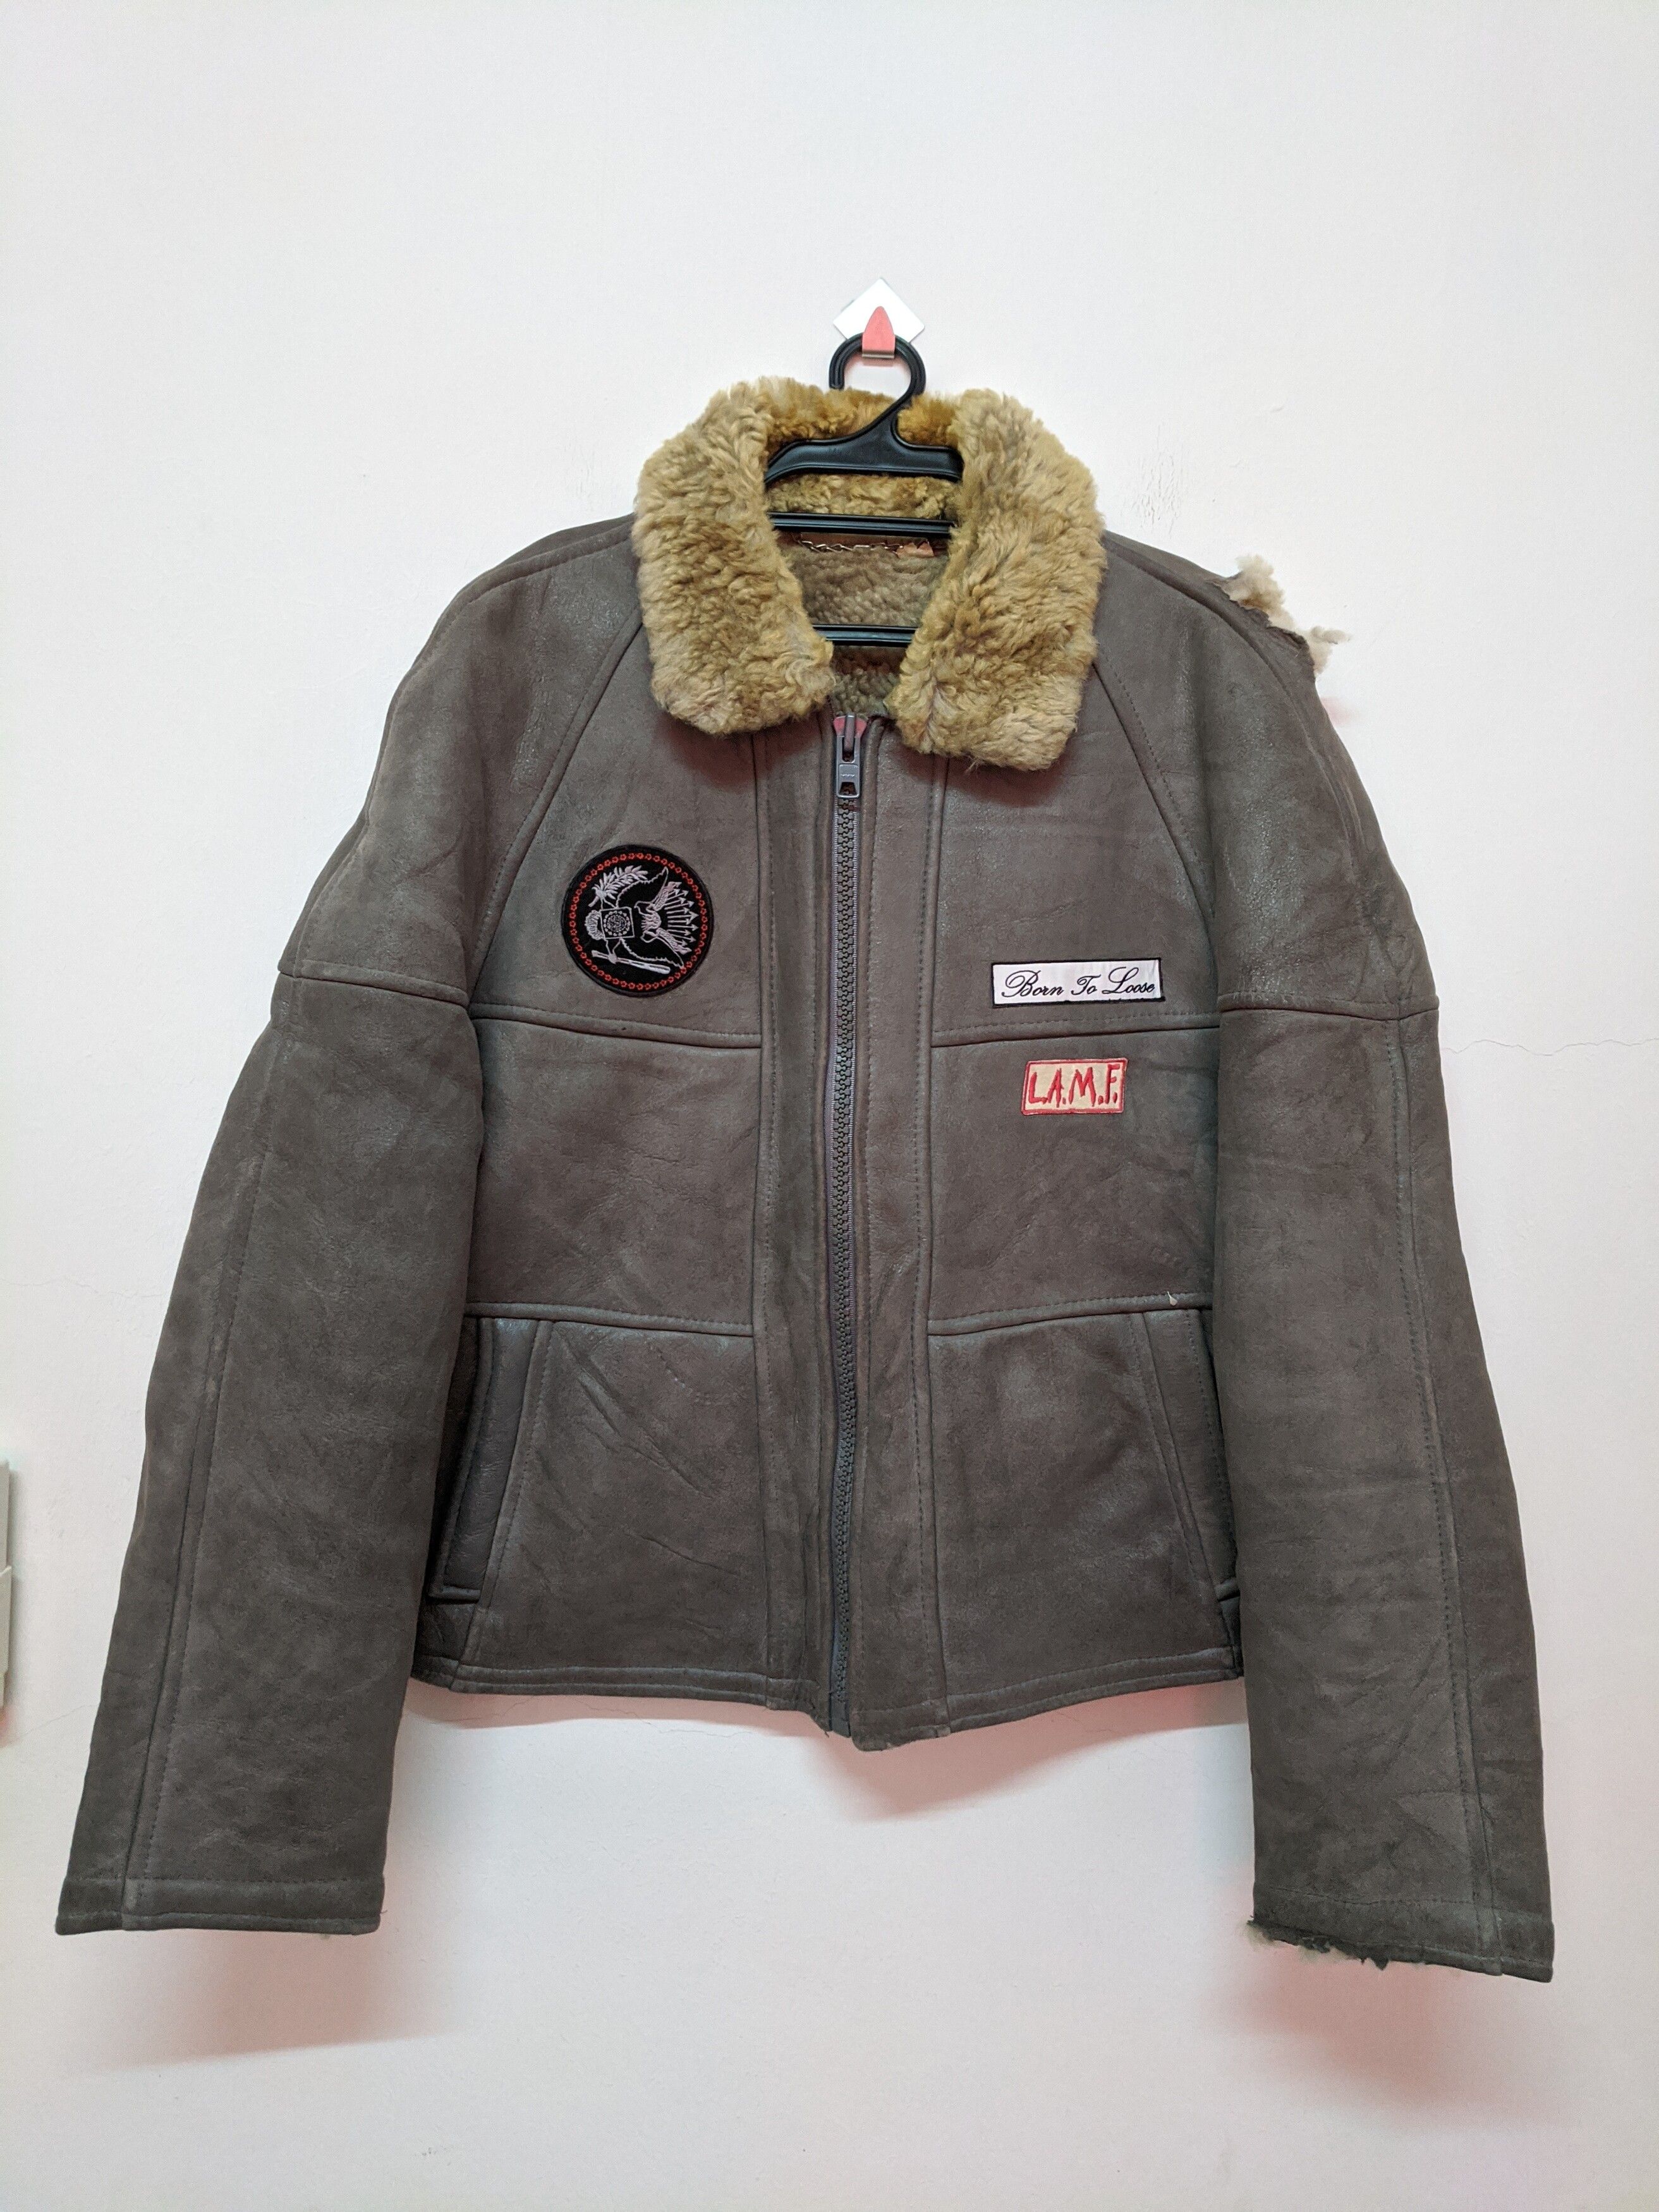 Vintage Vintage Gino leather jacket LAMF Johnny thunder punk | Grailed